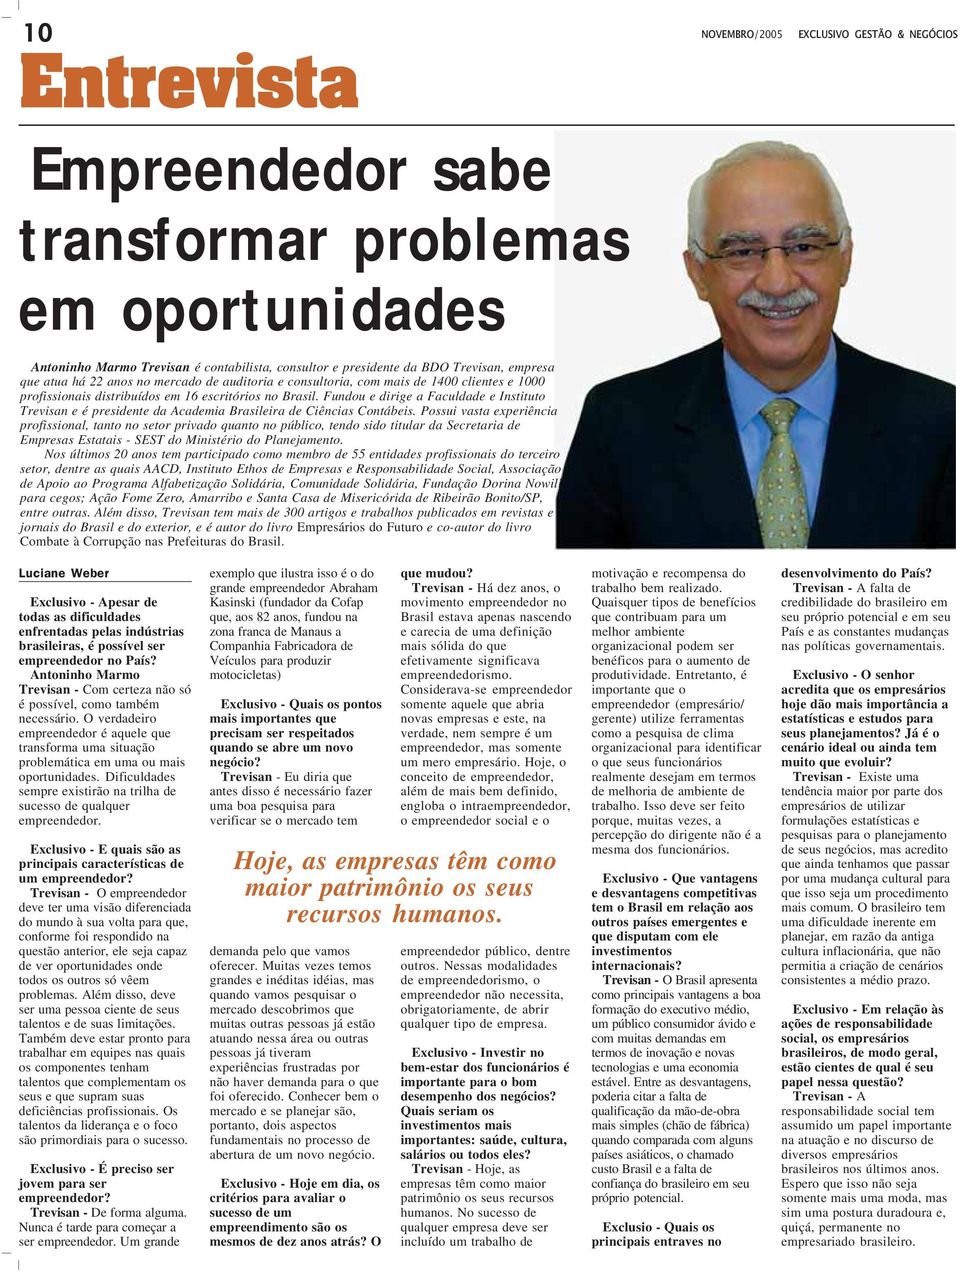 Fundou e dirige a Faculdade e Instituto Trevisan e é presidente da Academia Brasileira de Ciências Contábeis.